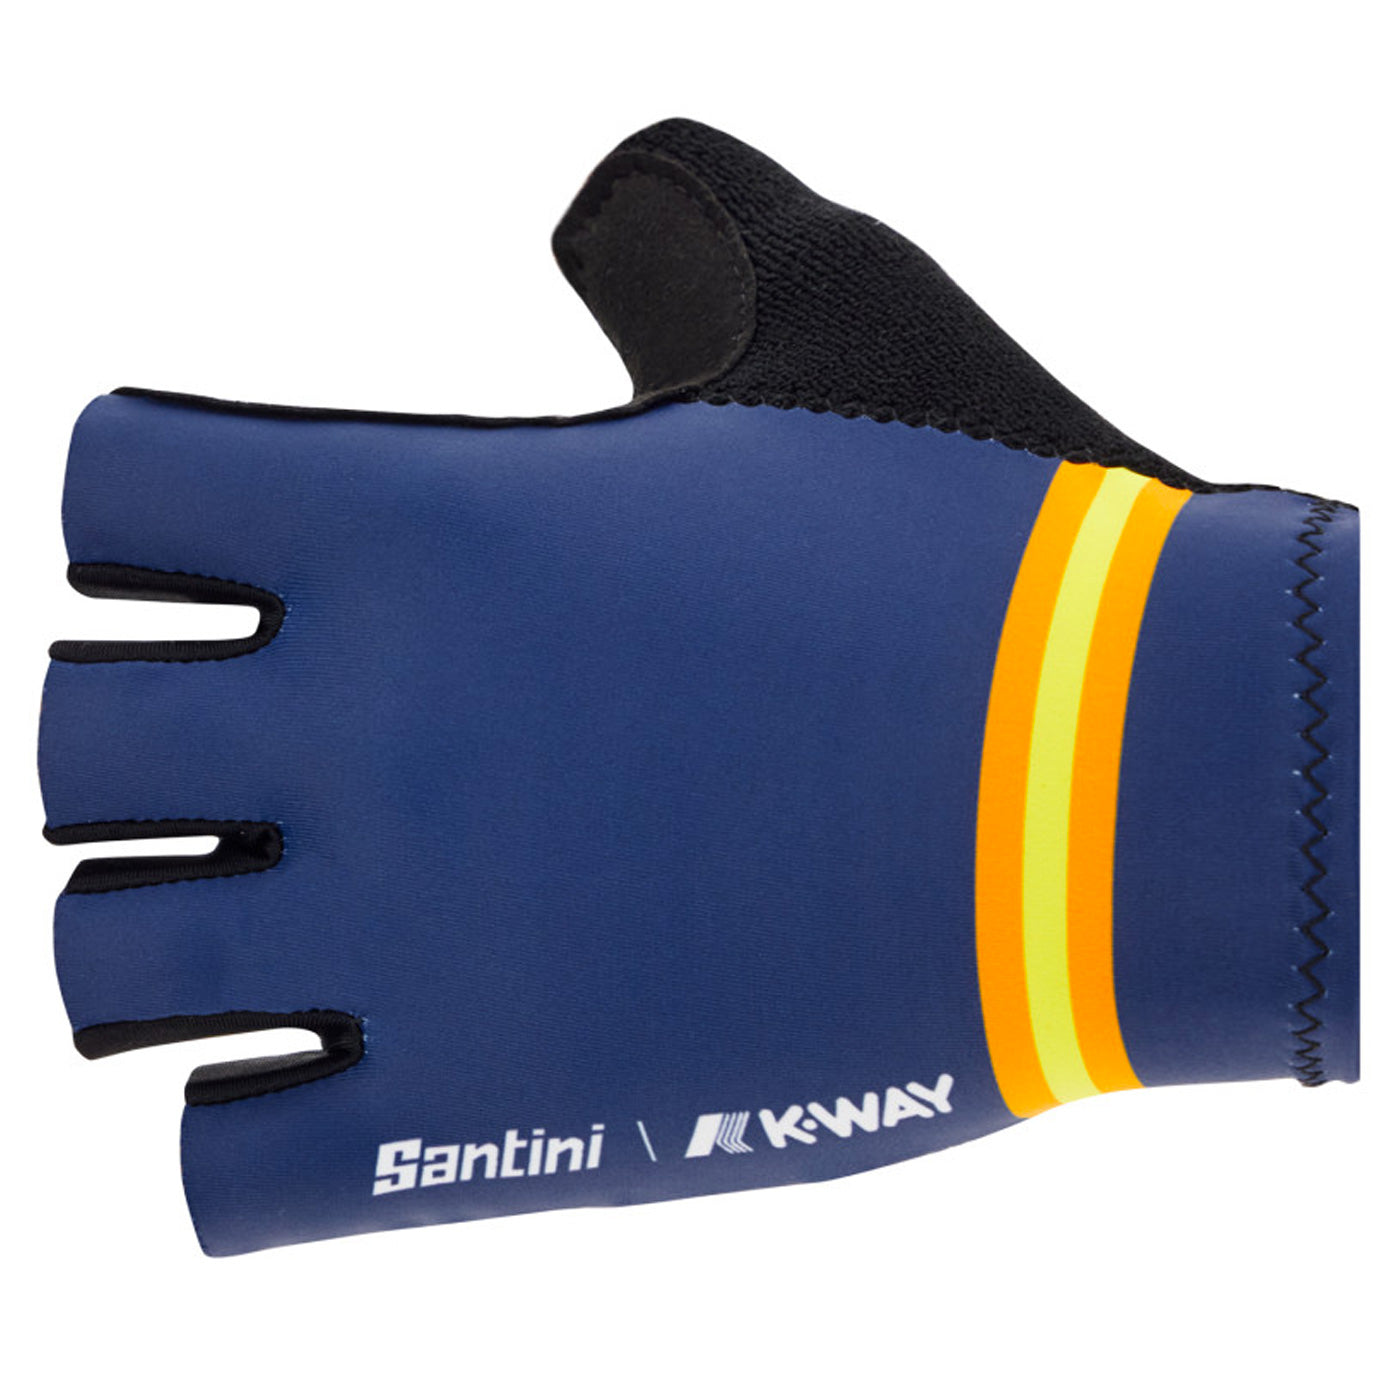 Santini Cubo handschuhe - Dunkel blau